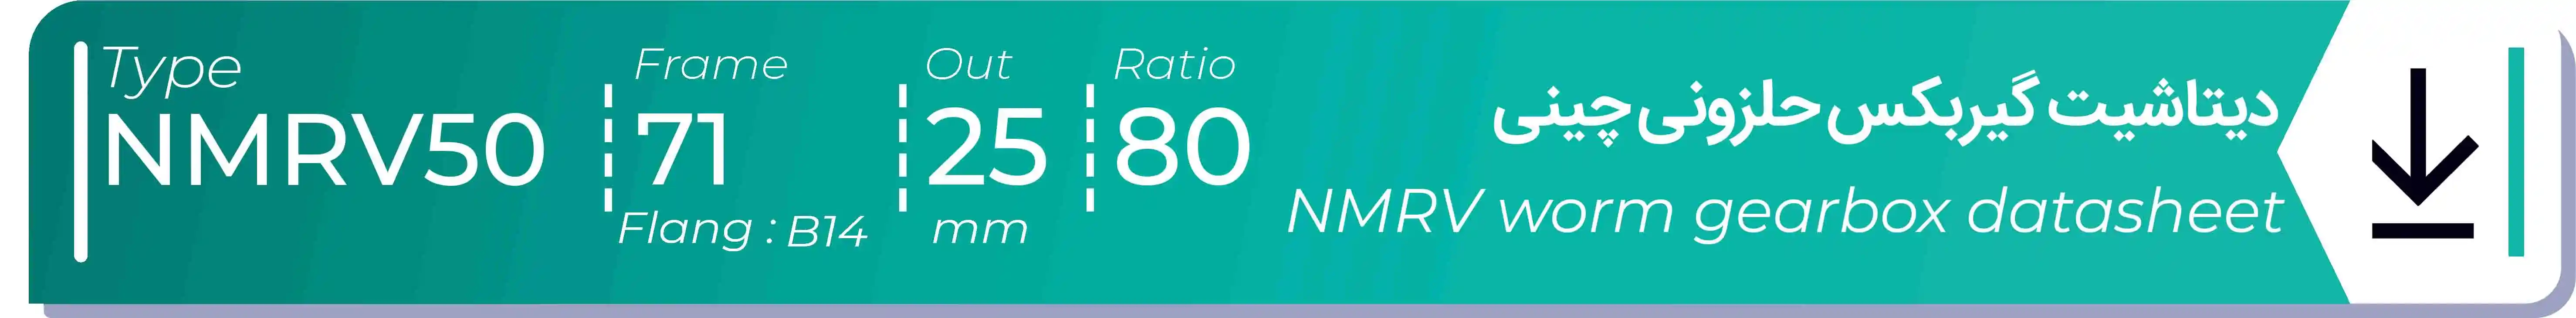  دیتاشیت و مشخصات فنی گیربکس حلزونی چینی   NMRV50  -  با خروجی 25- میلی متر و نسبت80 و فریم 71